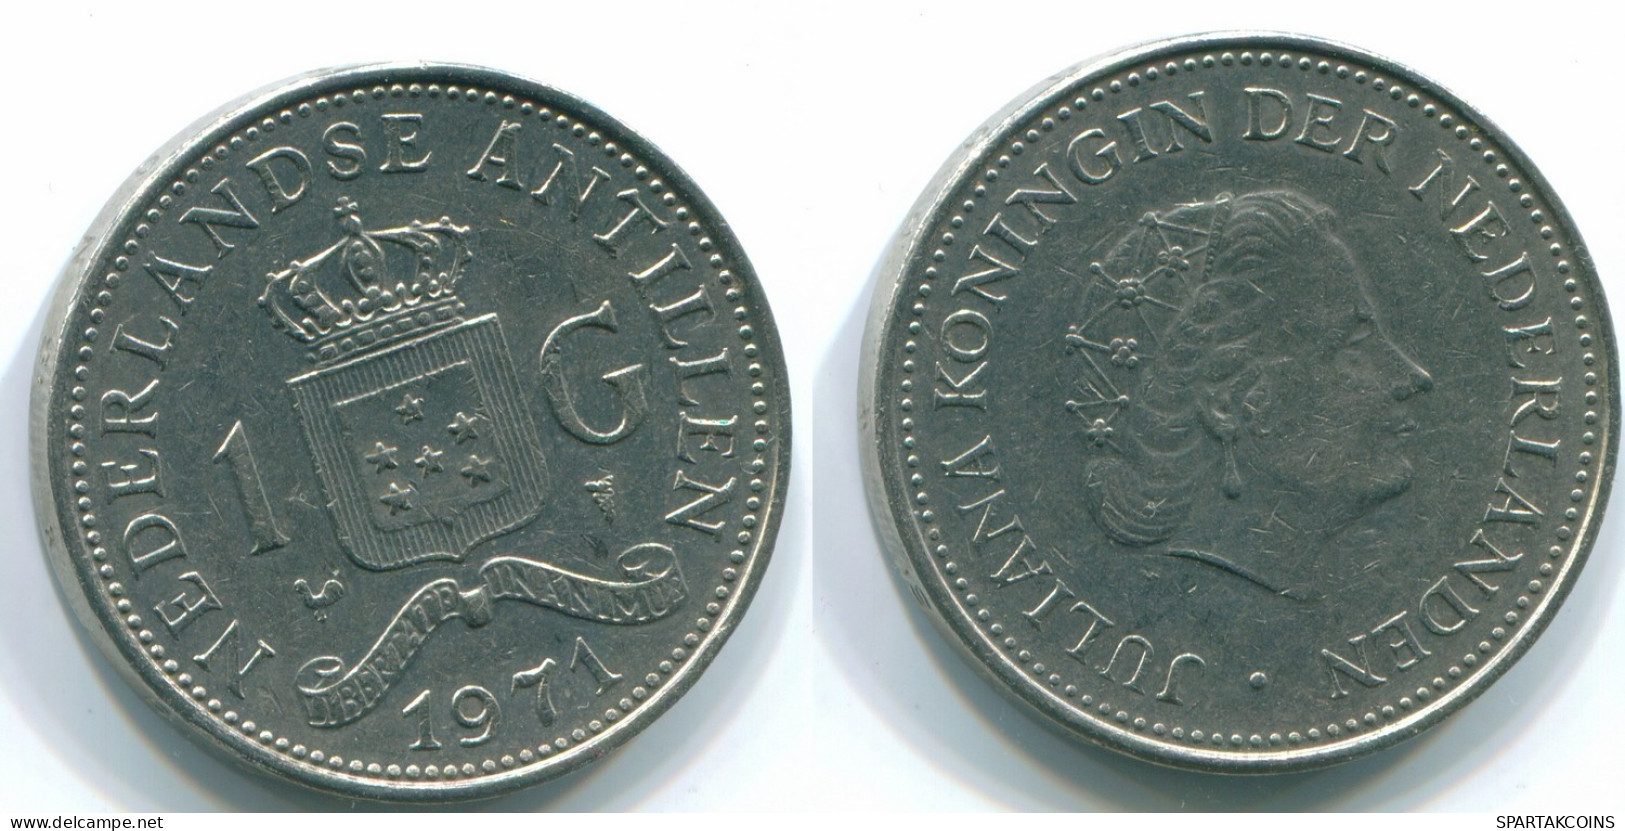 1 GULDEN 1971 NIEDERLÄNDISCHE ANTILLEN Nickel Koloniale Münze #S11920.D.A - Niederländische Antillen